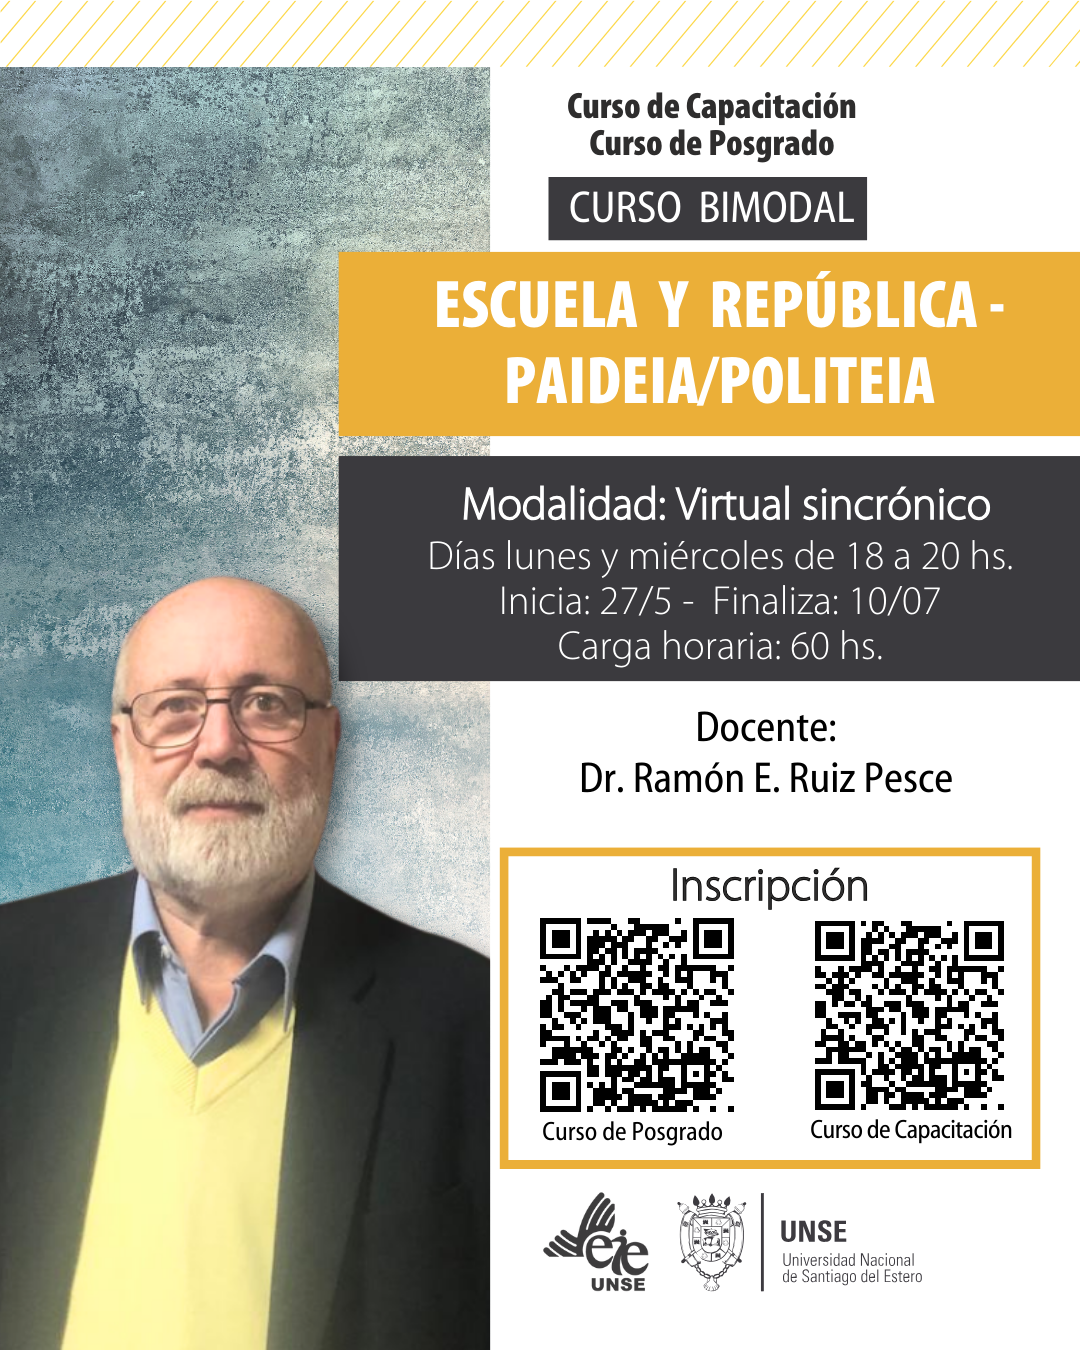 Curso Bimodal: "Escuela y República - Paideia/Politeia"